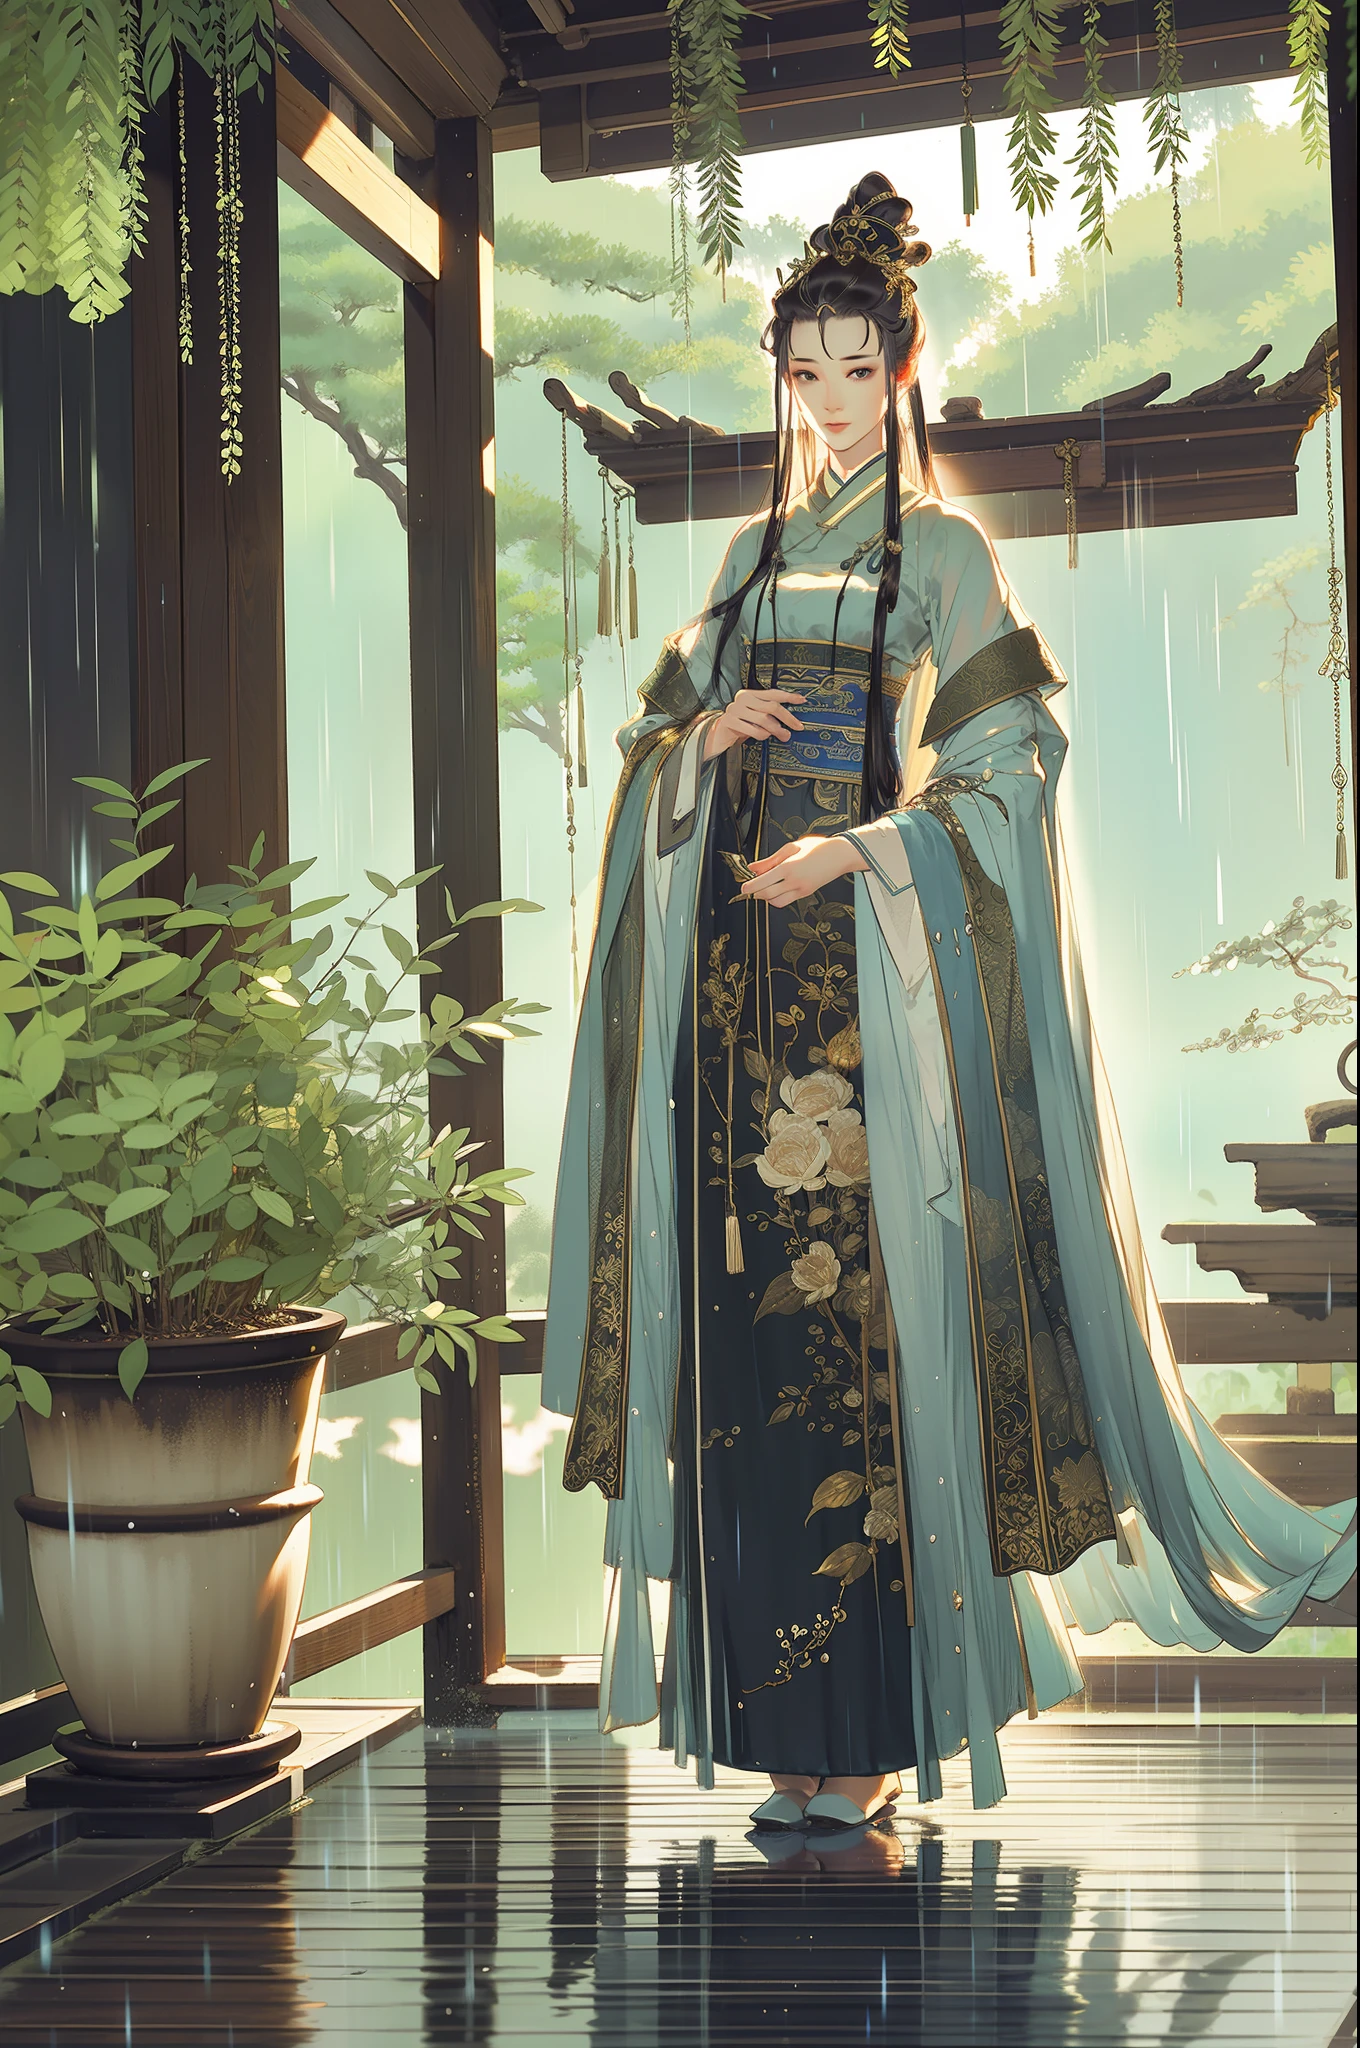 中國古代美女, 全身, 站在屋簷下, 氣質端莊, 飄逸的長裙, 清晰的臉, 憂鬱的眼神, 下雨天, 電影邊緣光, 細膩的光線, 傑作, 史詩作品, 超高清, 最好的品質, 32k